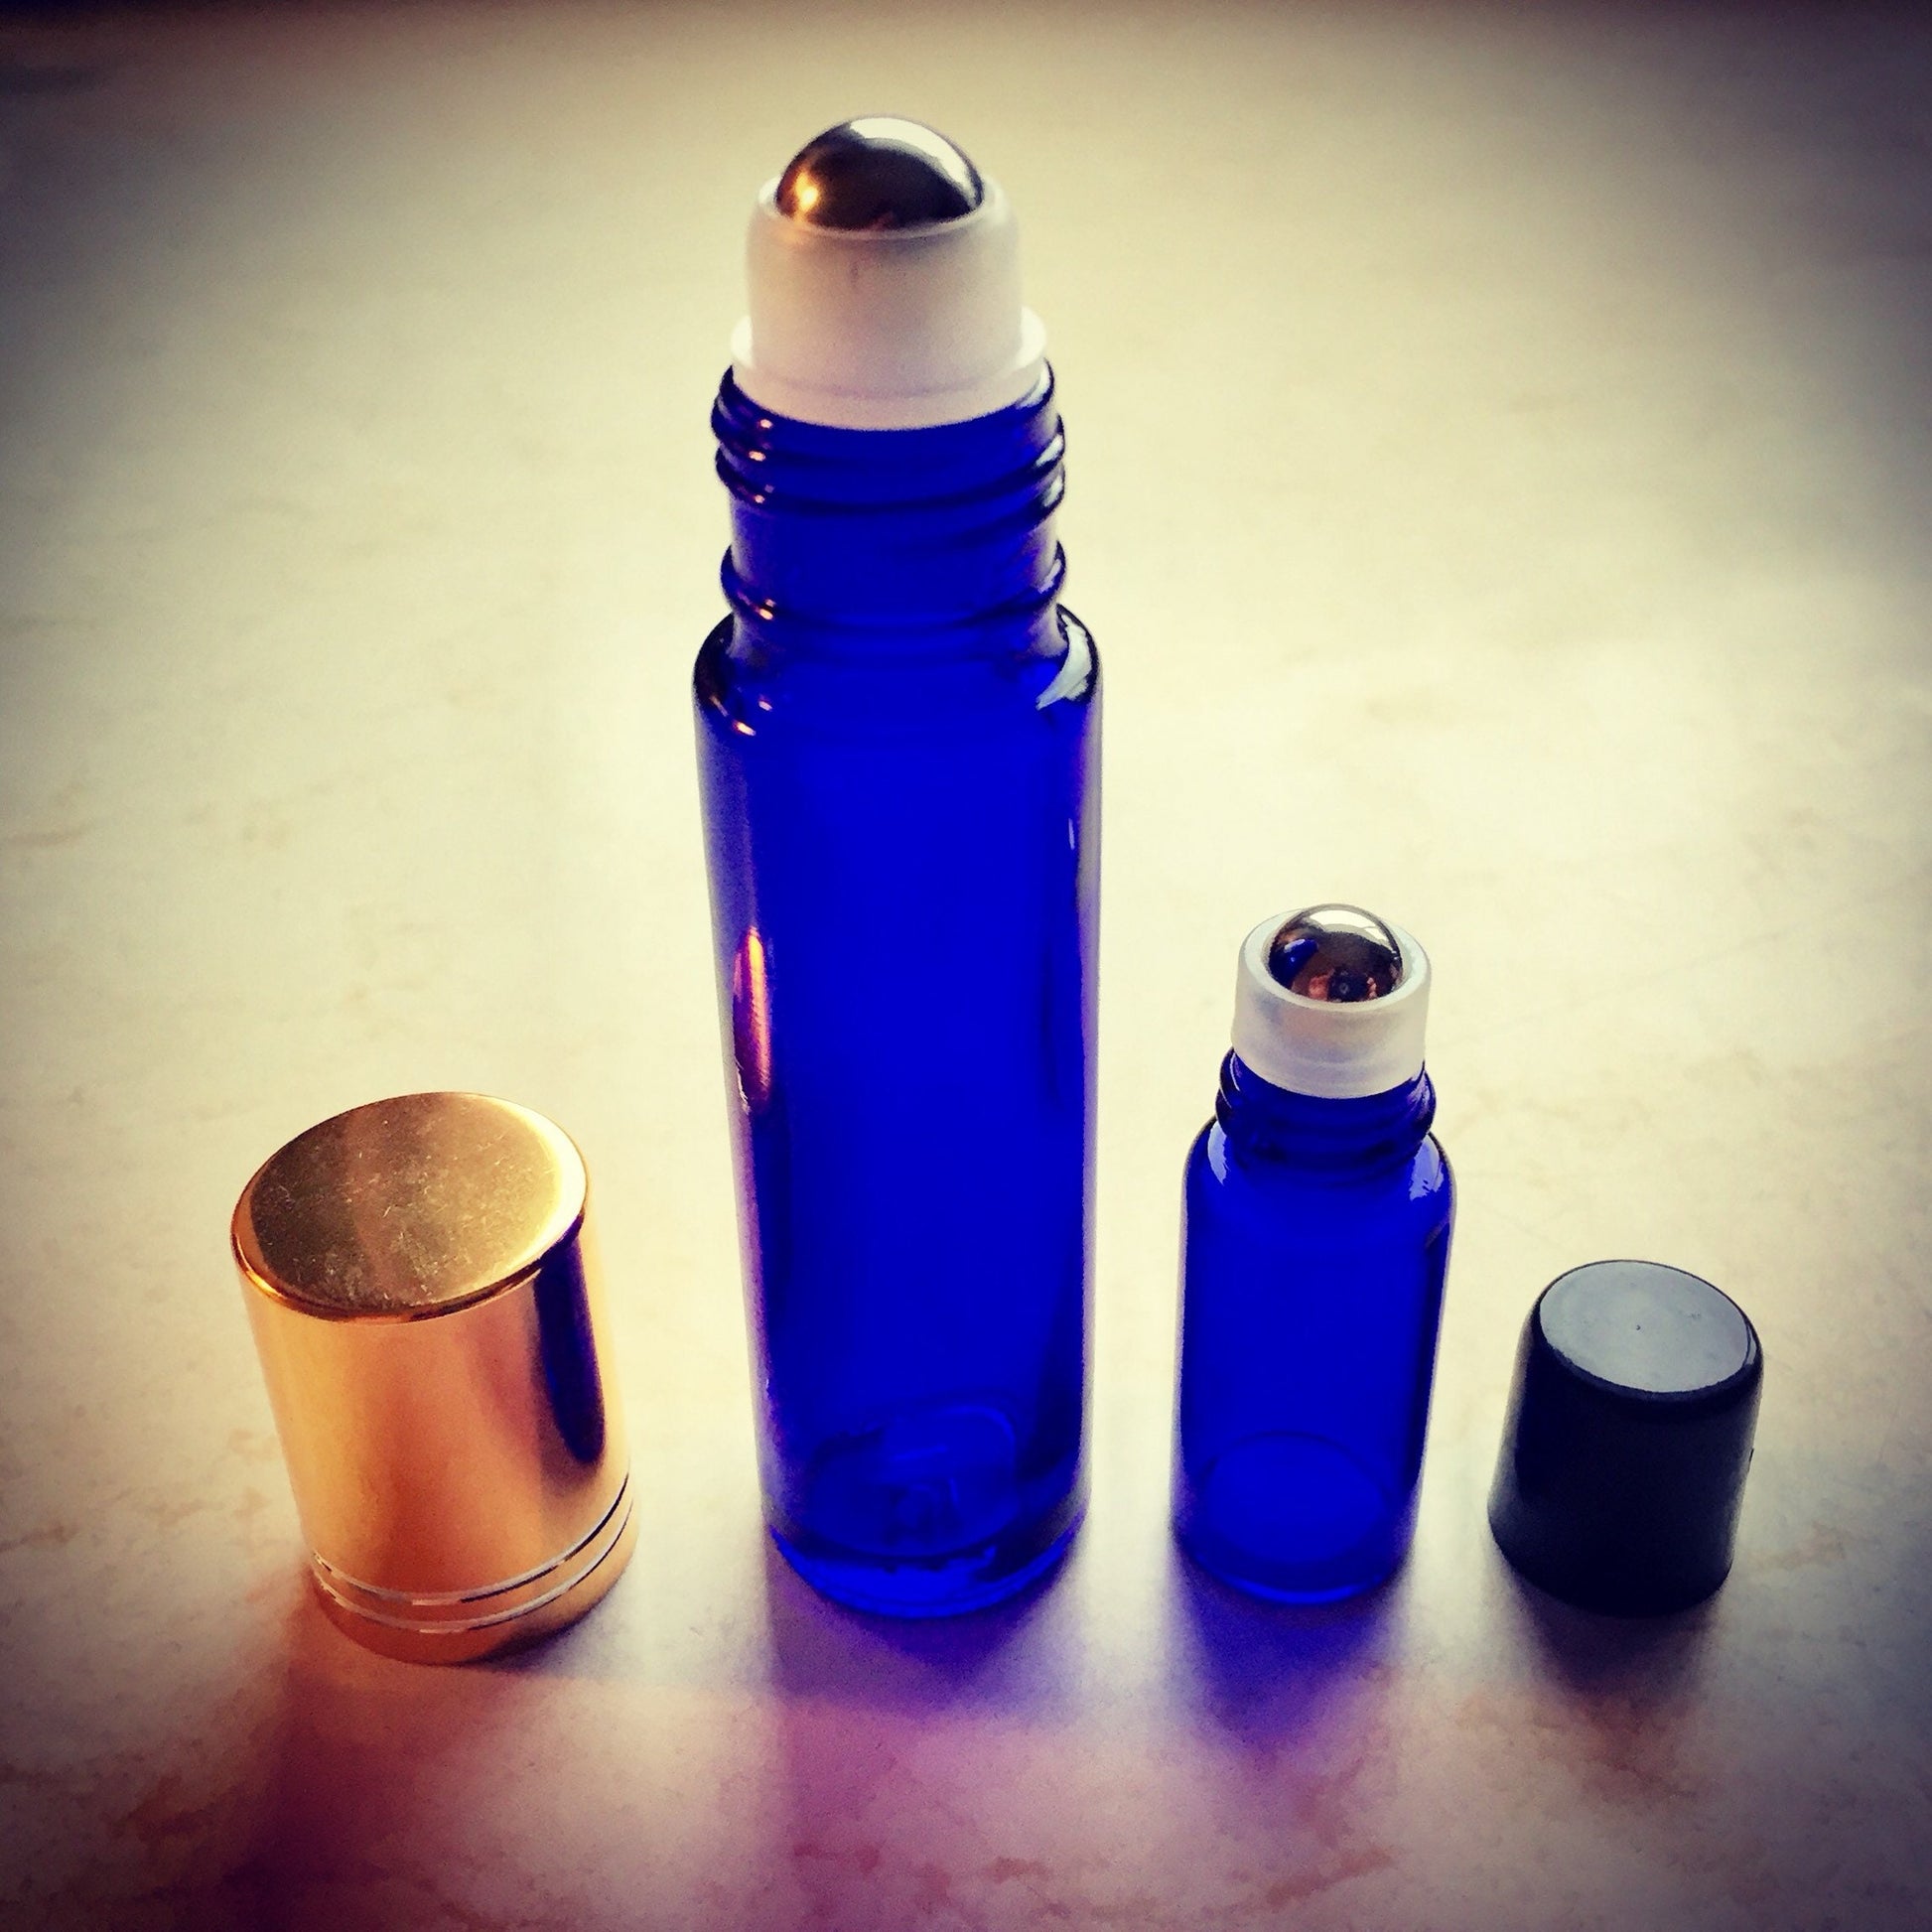 Frankincense Anointing Oil in Cobalt Blue Glass Bottle (15ml)